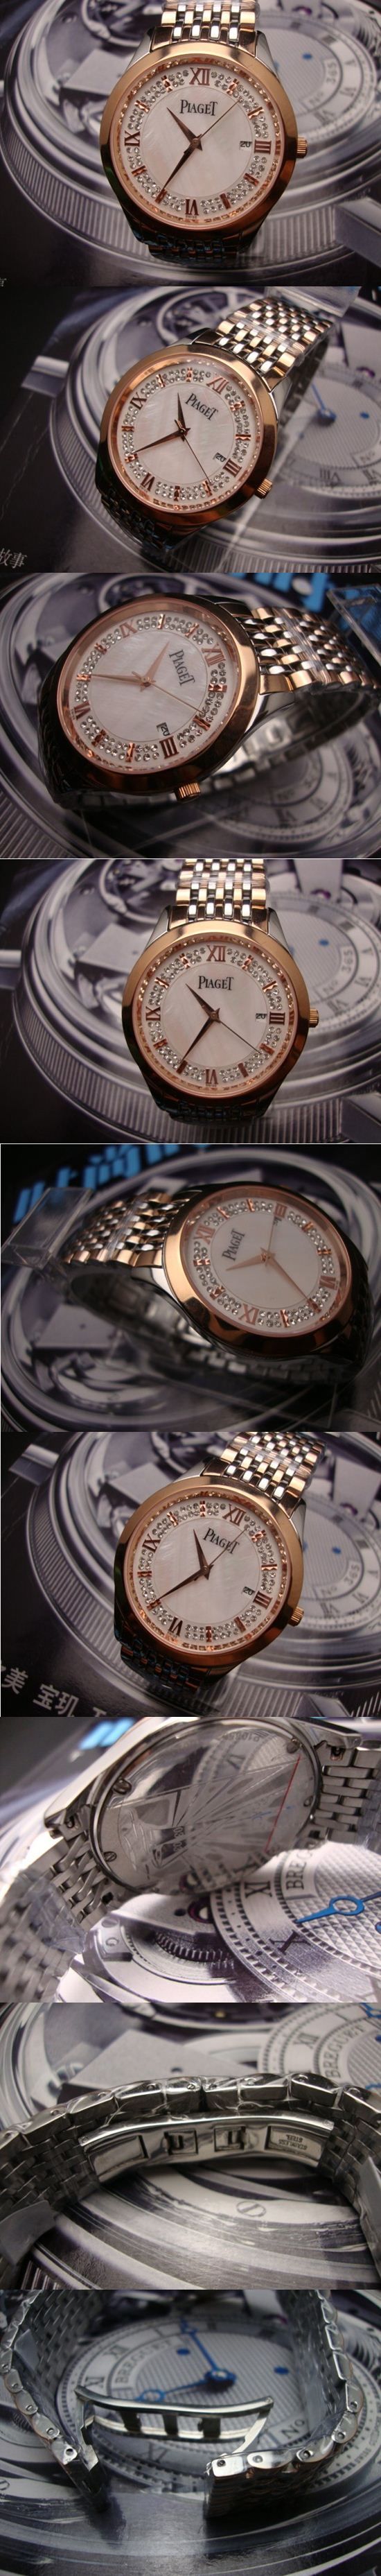 おしゃれなブランド時計がPIAGET-ピアジェ腕時計 ピアジェ 男/女腕時計 PIAGET-N-001Aを提供します.